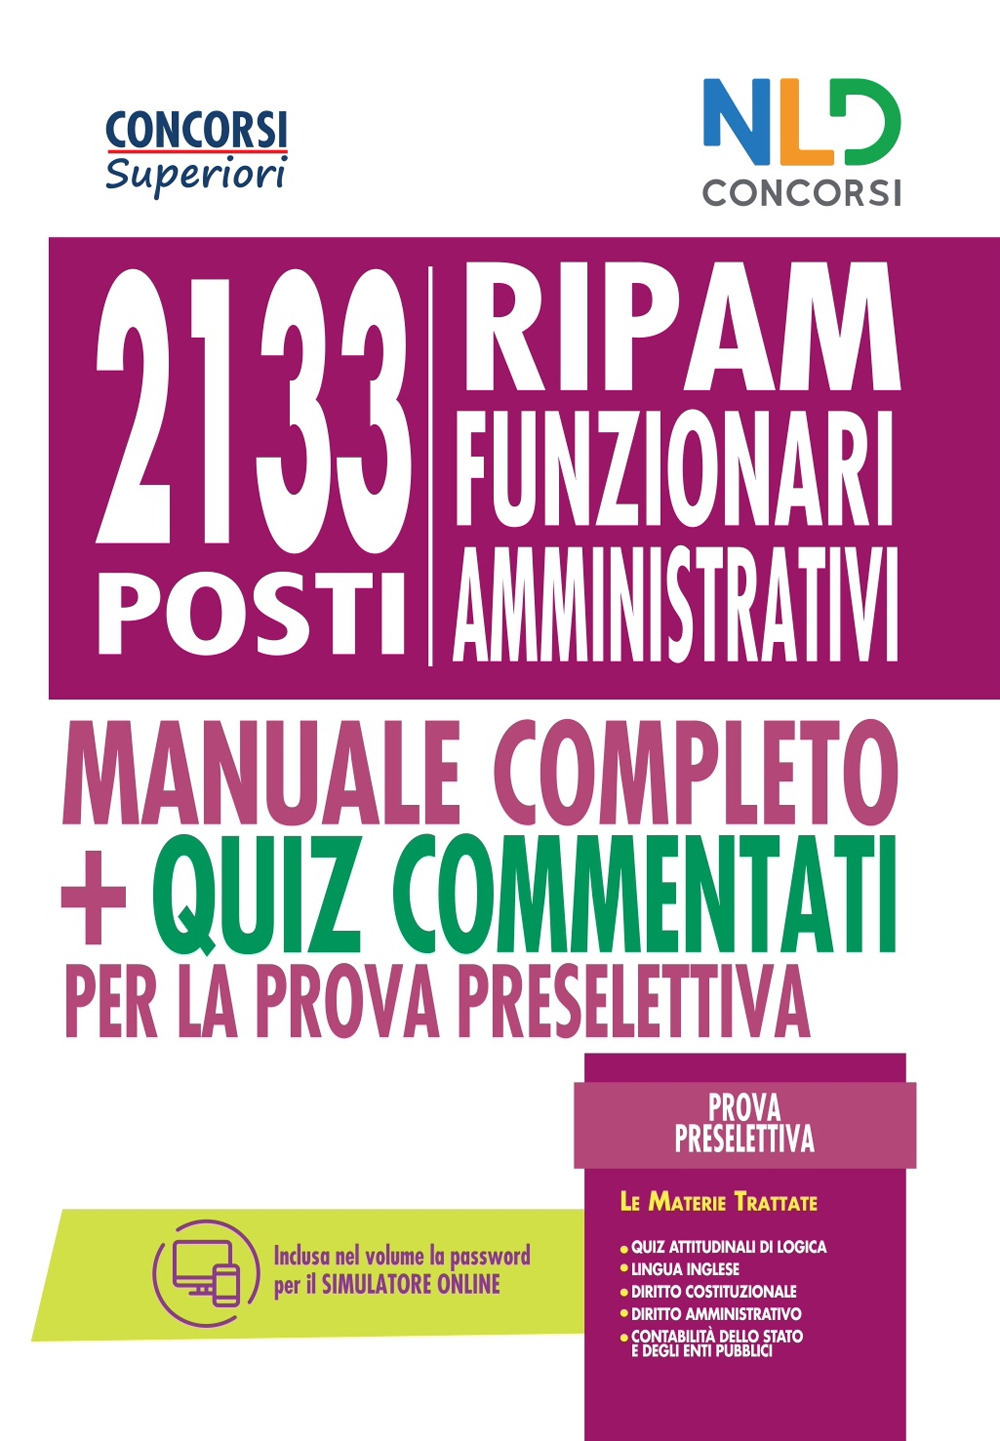 Concorso 2133 funzionari amministrativi RIPAM: Manuale + quiz per la prova preselettiva